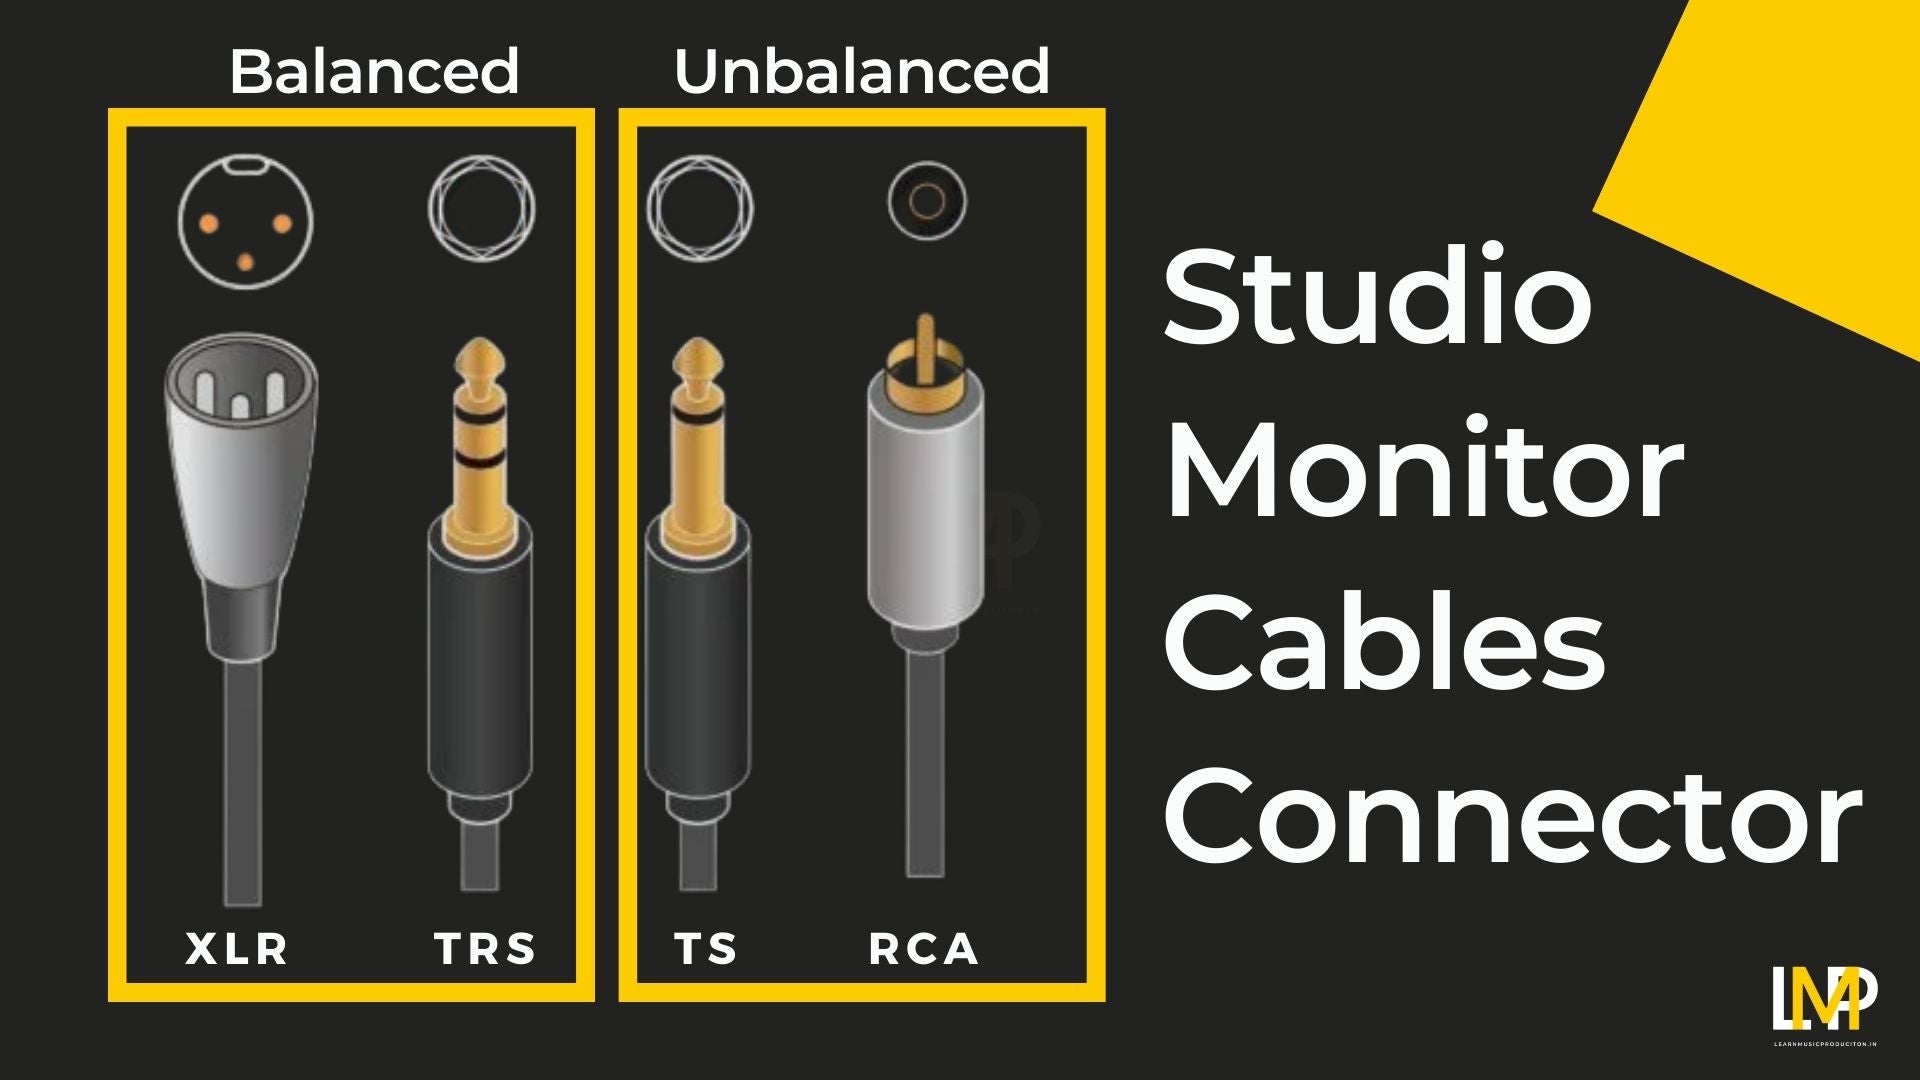 Studio Monitors Cable Connectors